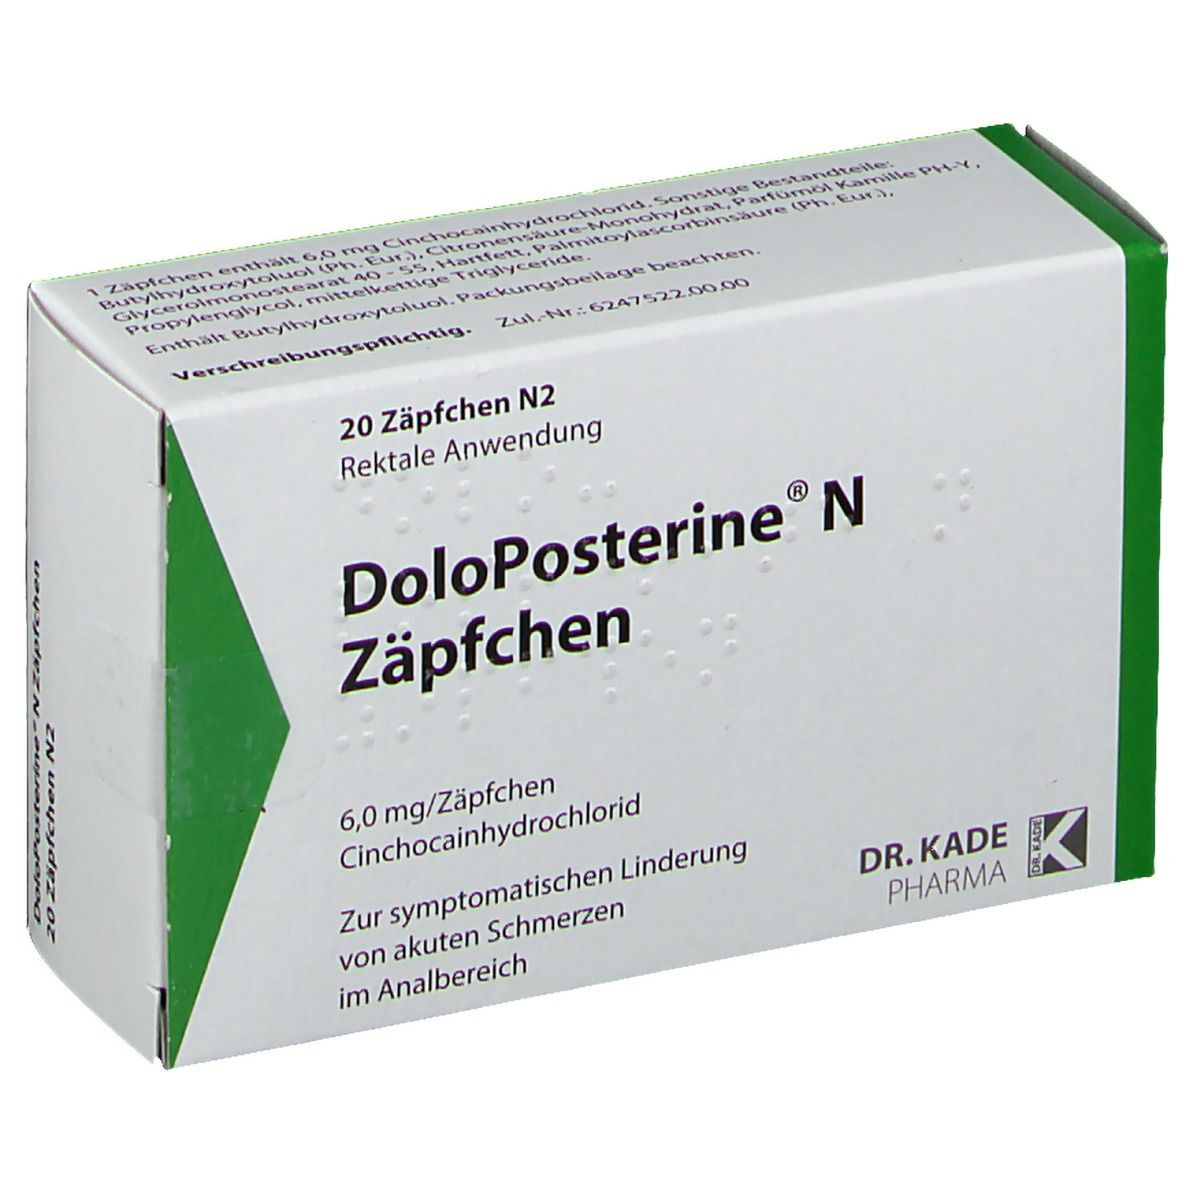 DoloPosterine® N Zäpfchen